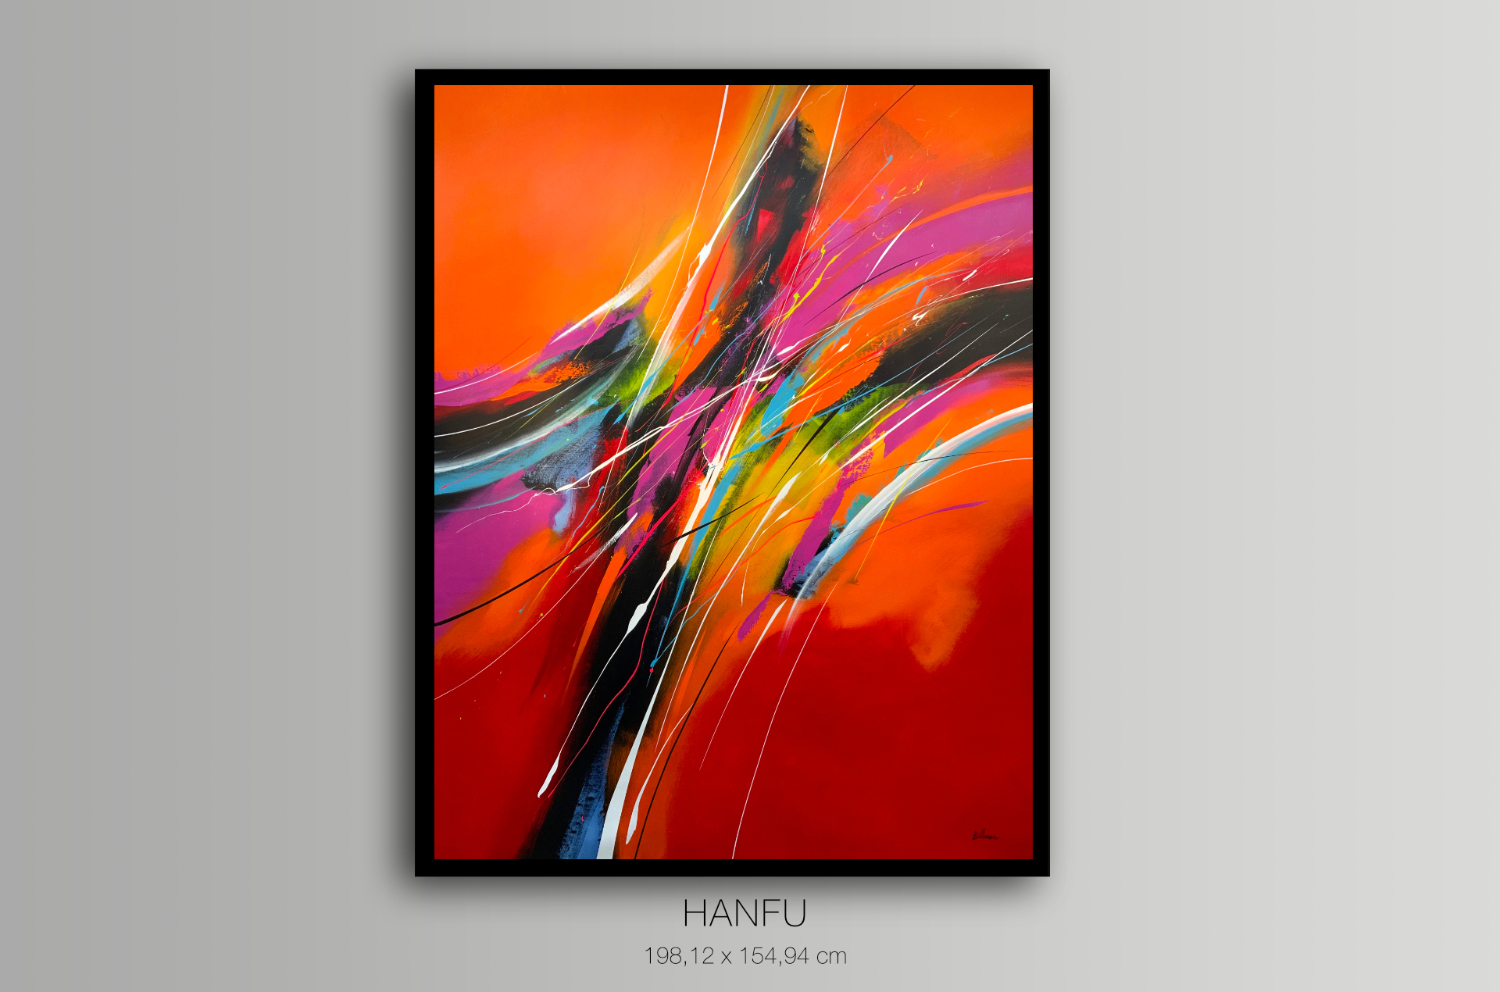 Hanfu - Featured